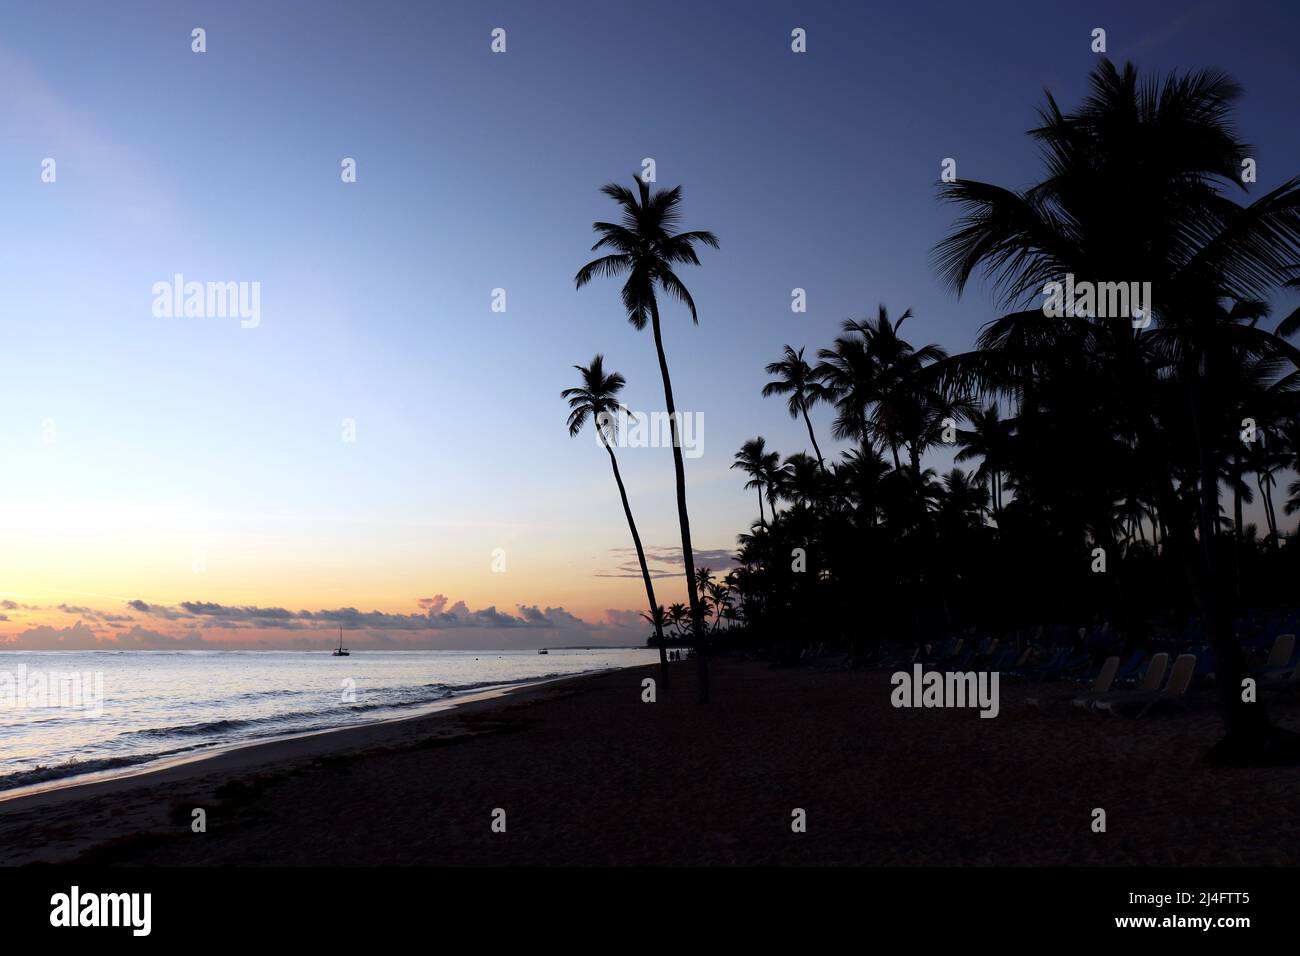 Silhouettes de palmiers à noix de coco sur la plage, ciel de coucher de soleil avec nuages. Côte tropicale, nature paradisiaque pour l'arrière-plan Banque D'Images